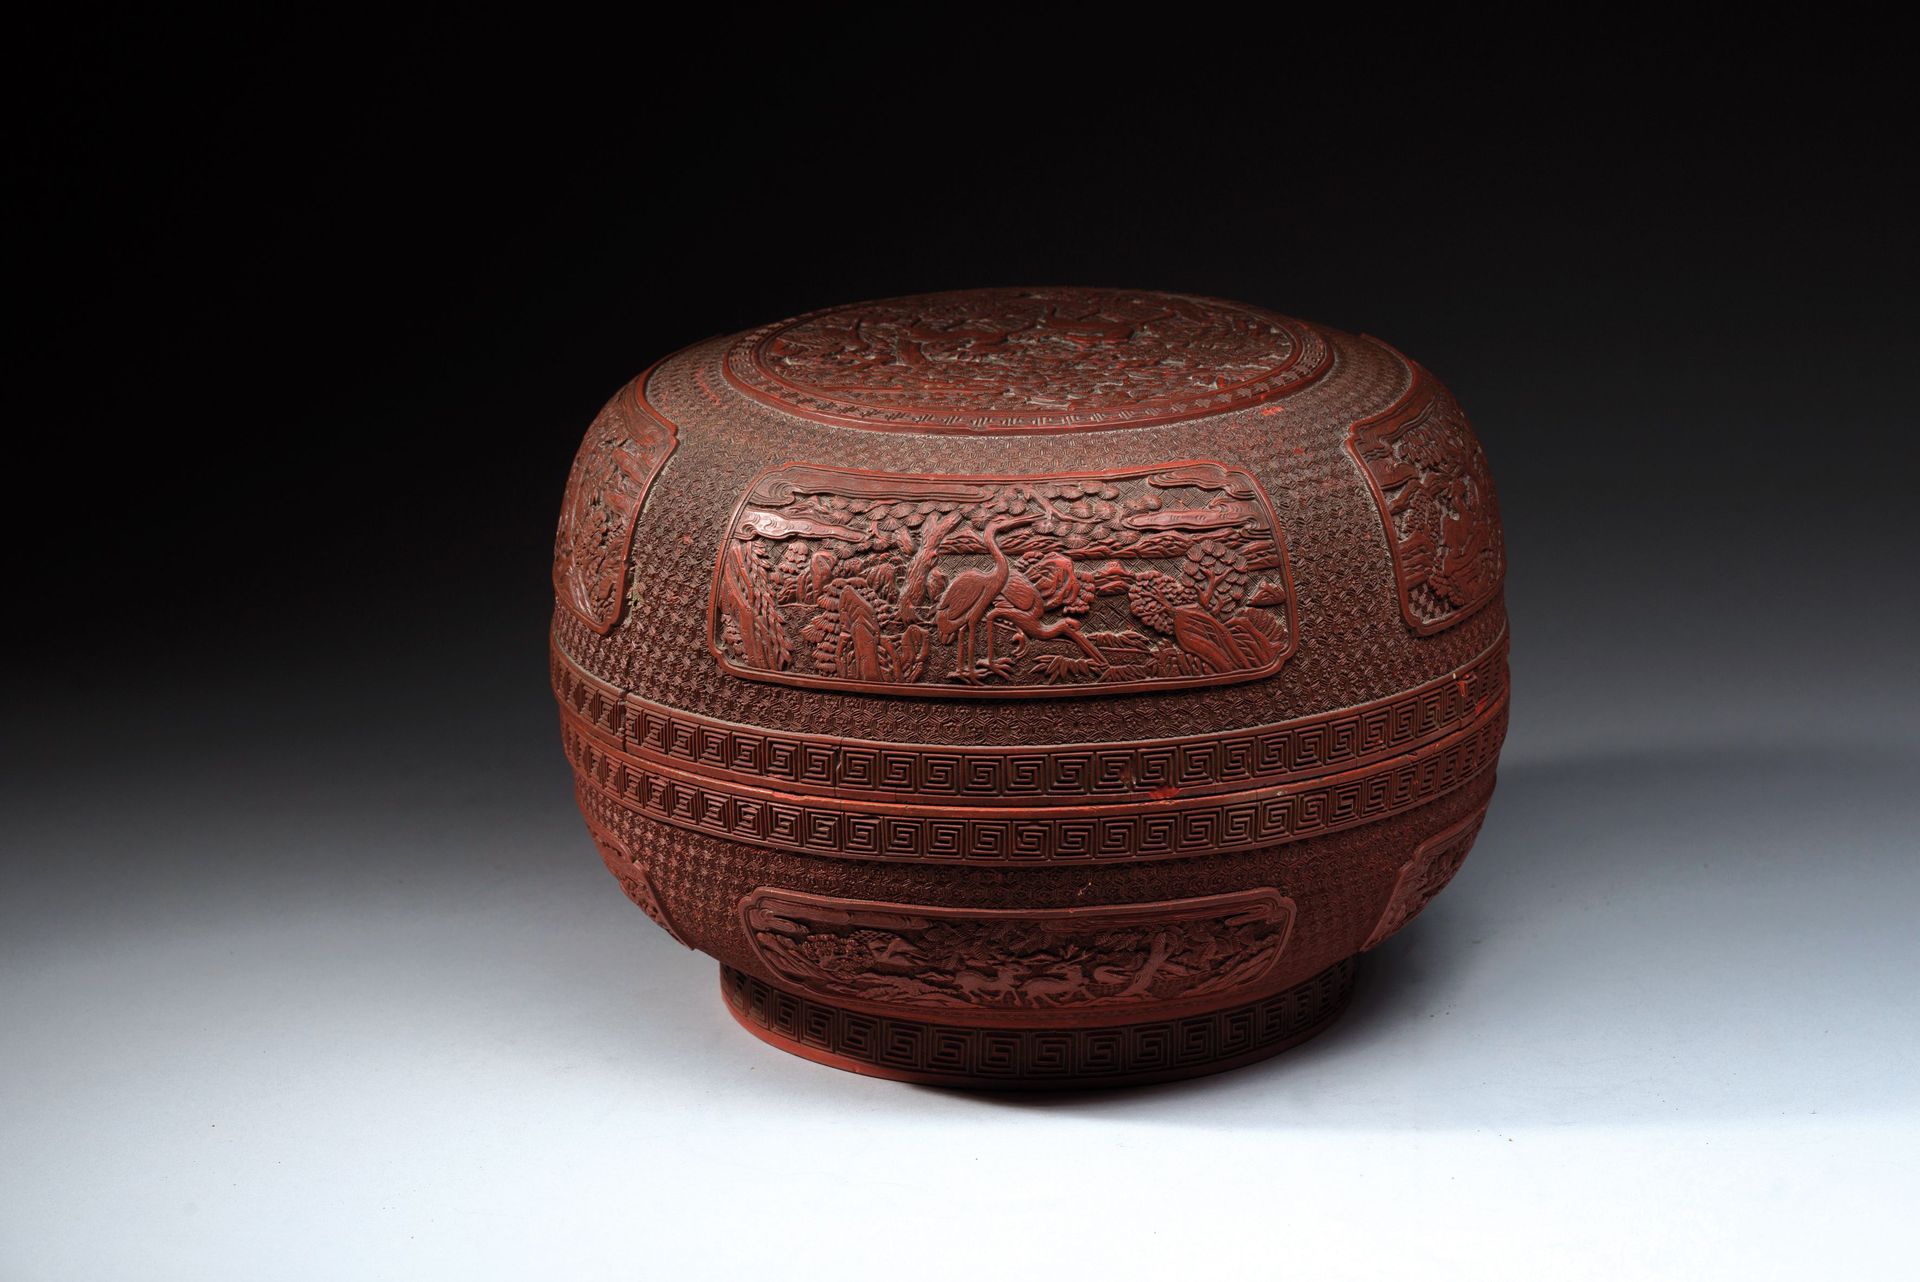 Null 中国，钱龙时期（1736-1795）。 
一个圆形的红漆盒子，盖子上雕刻着一对松树下的鹿，周围有雷文楣，四个底板上交替装饰着一对鹿和鹤的格子背景。边缘&hellip;